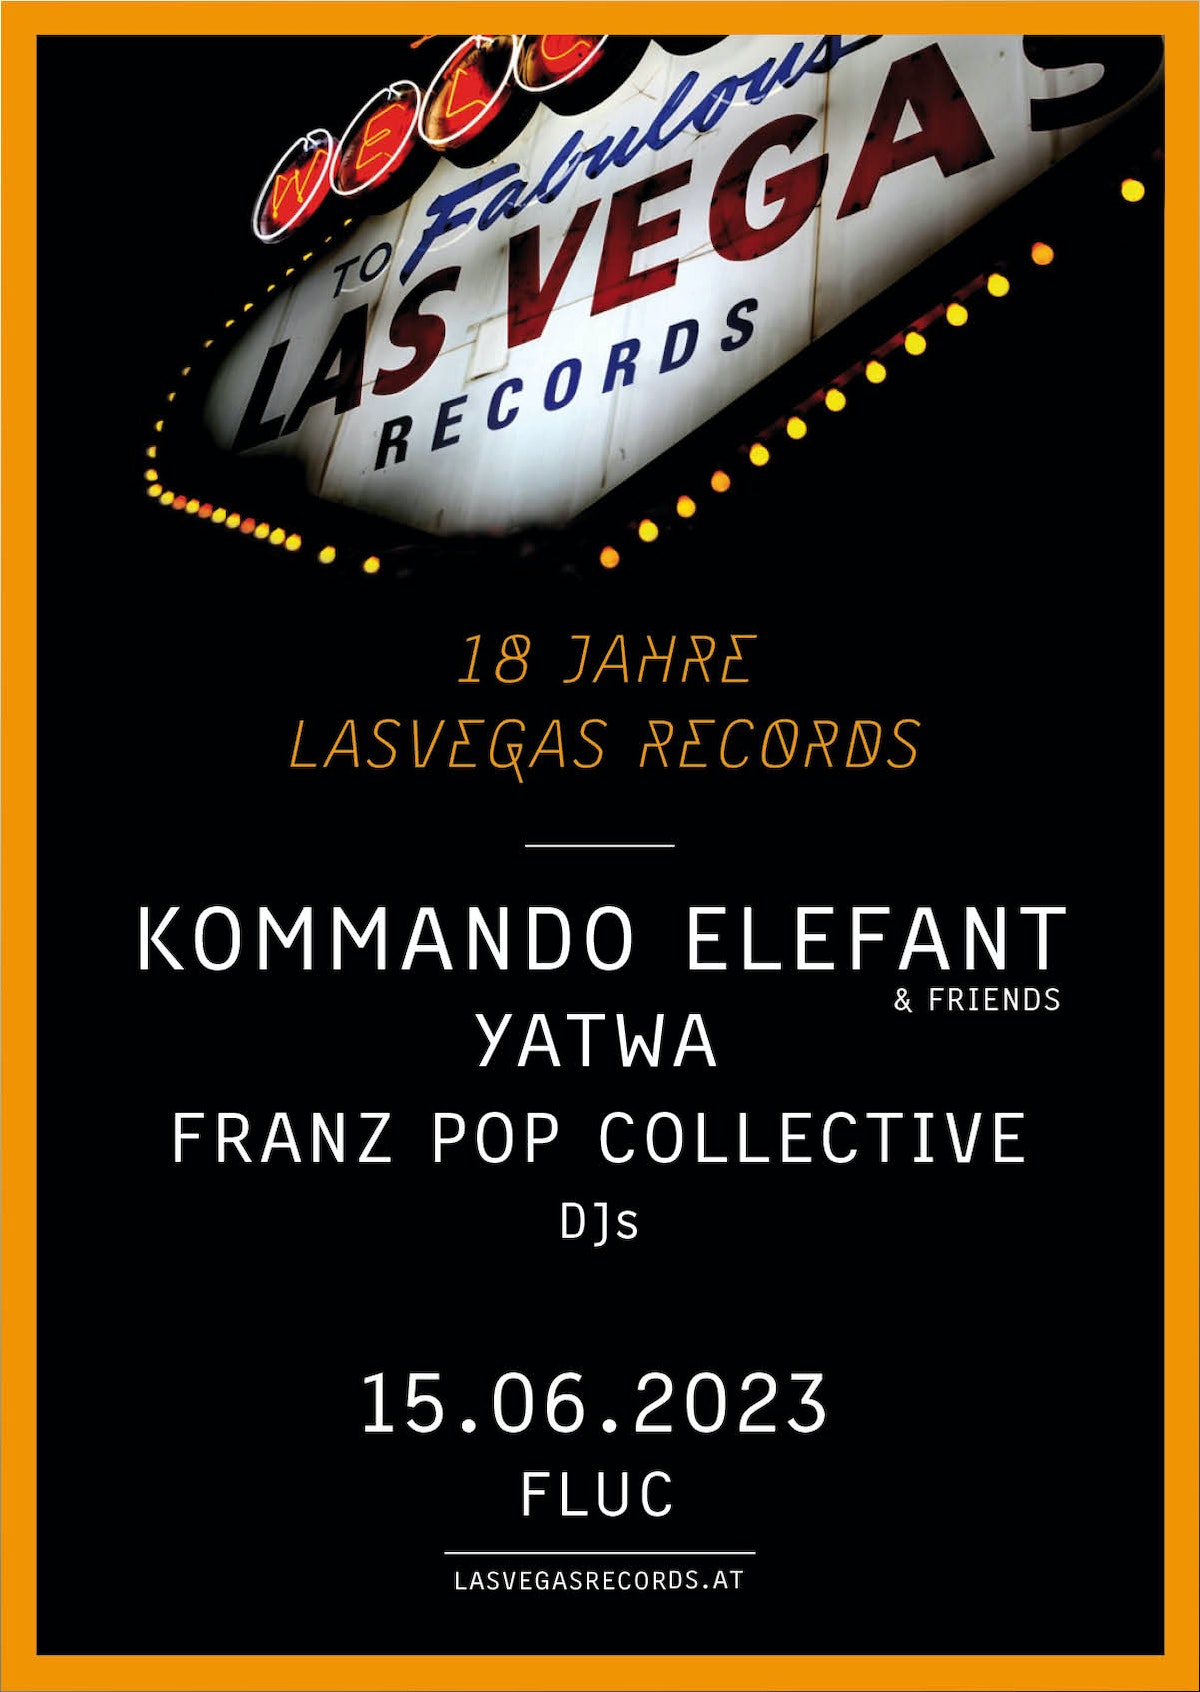 18 Jahre LasVegas Records am 15. June 2023 @ Fluc.